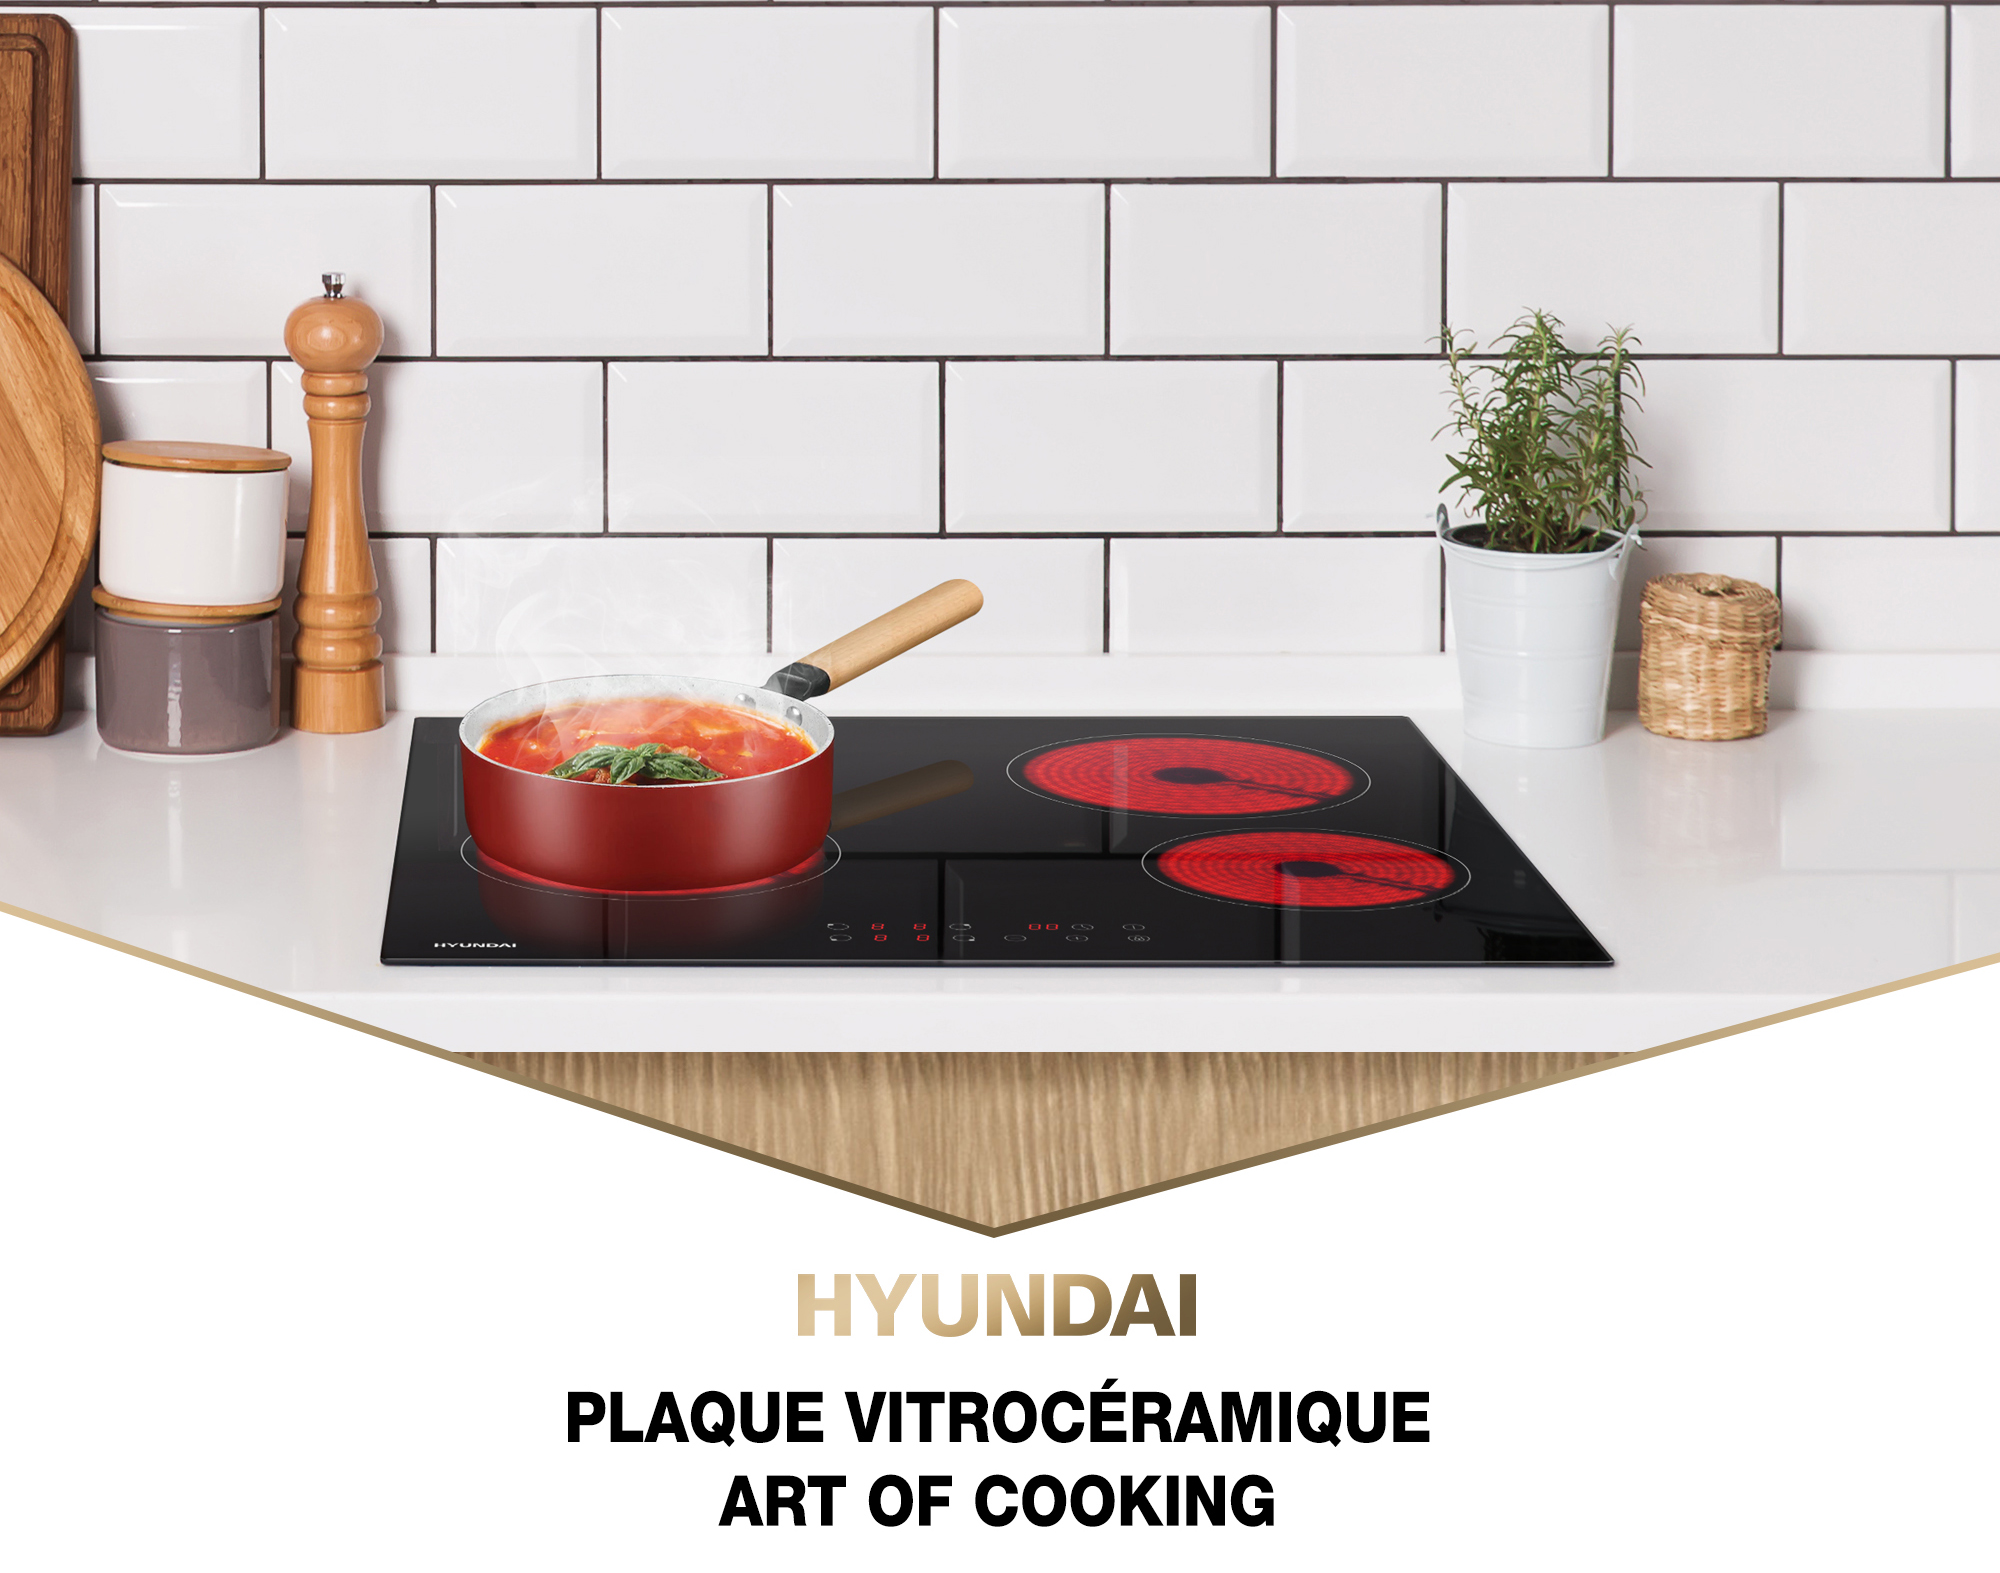 25€ sur Hyundai - Plaque vitrocéramique 2 foyers table de cuisson 3000W 9  puissances - touche tactile - Plaque vitrocéramique - Achat & prix